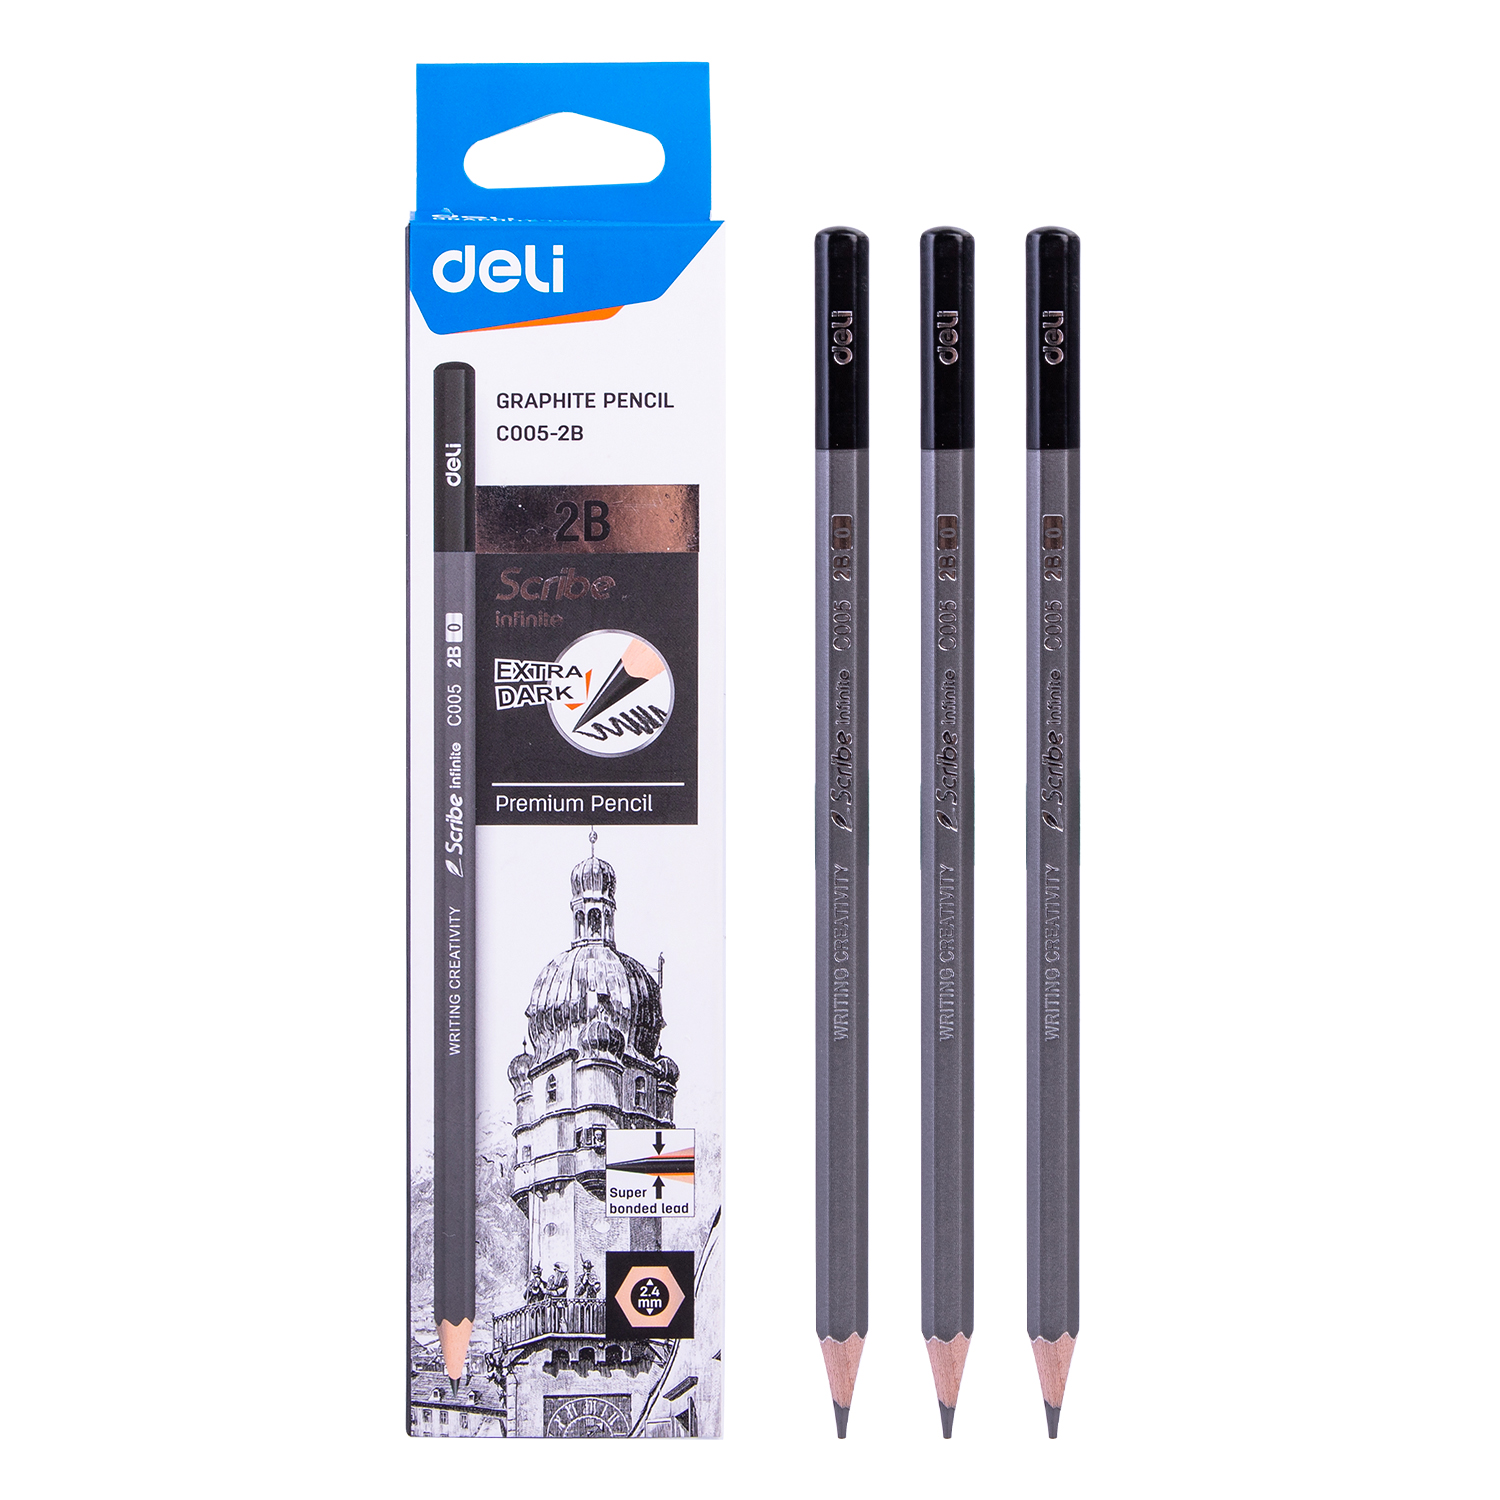 Deli-EC005-2B Graphite Pencil